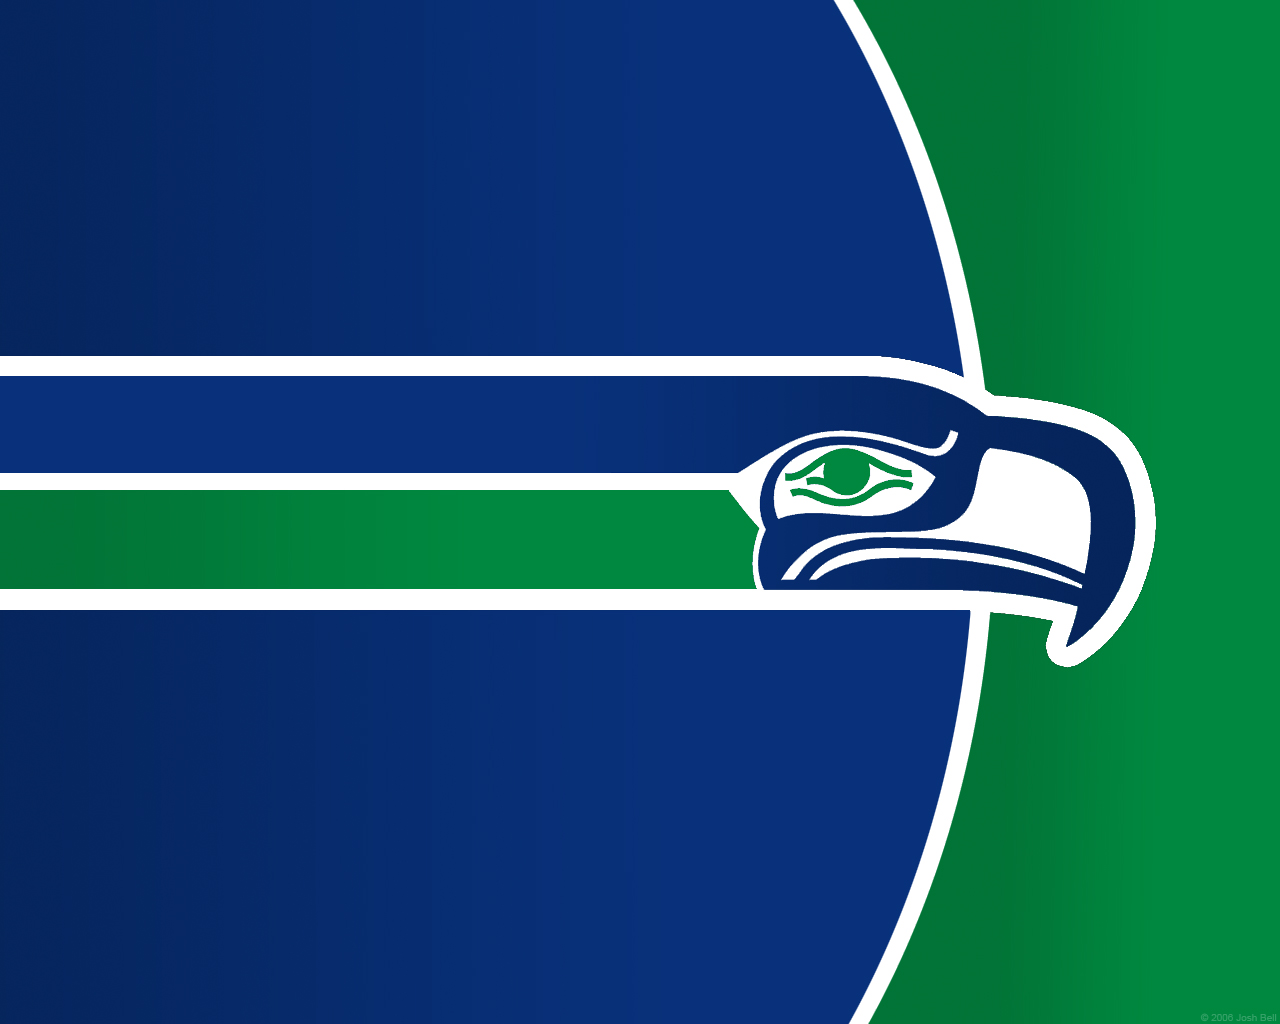 Seattle Seahawks Puter Wallpaper Desktop Background